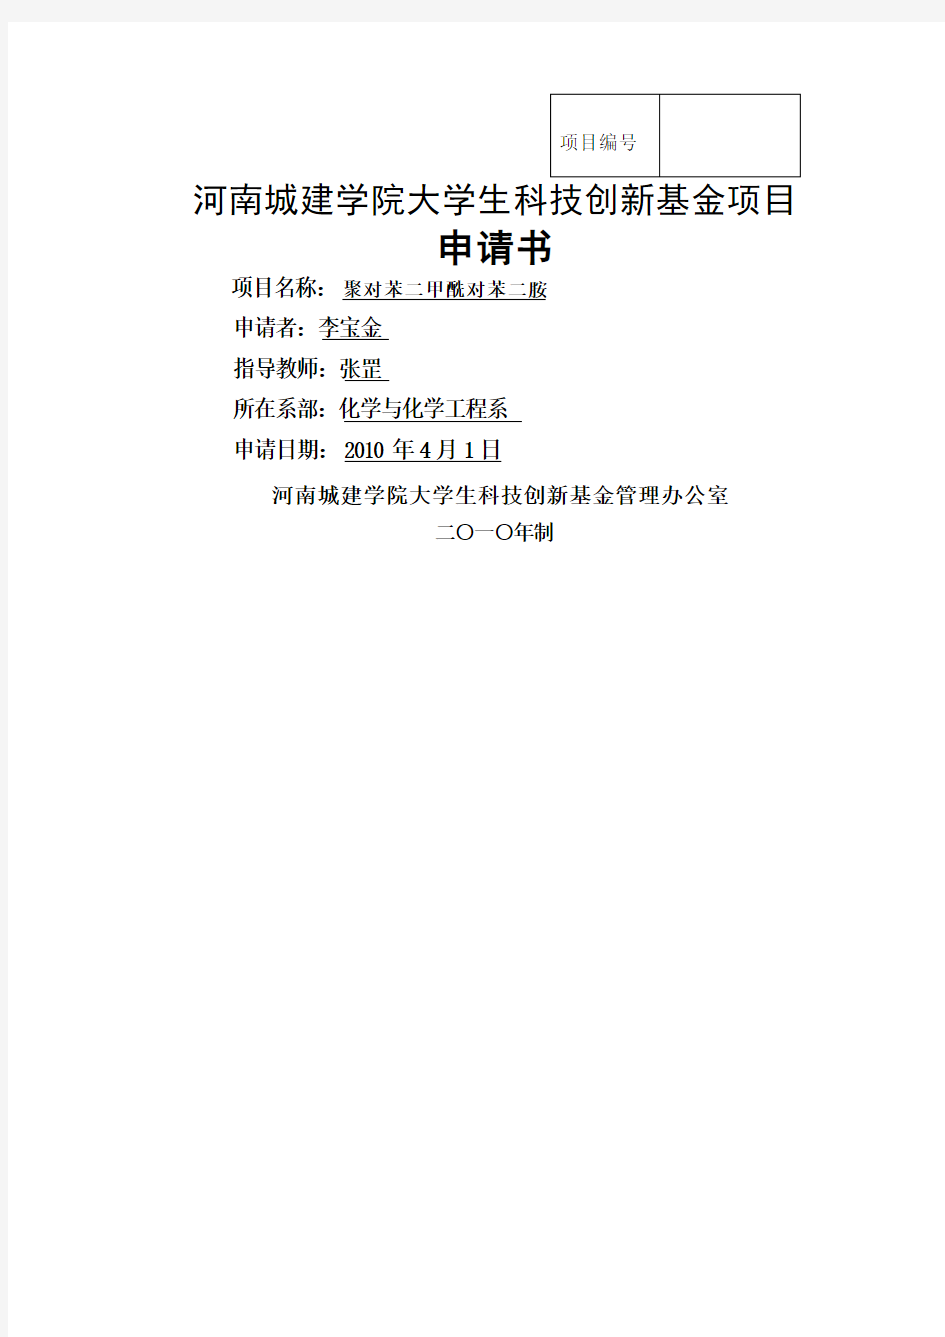 河南城建学院大学生科技创新基金项目申请书